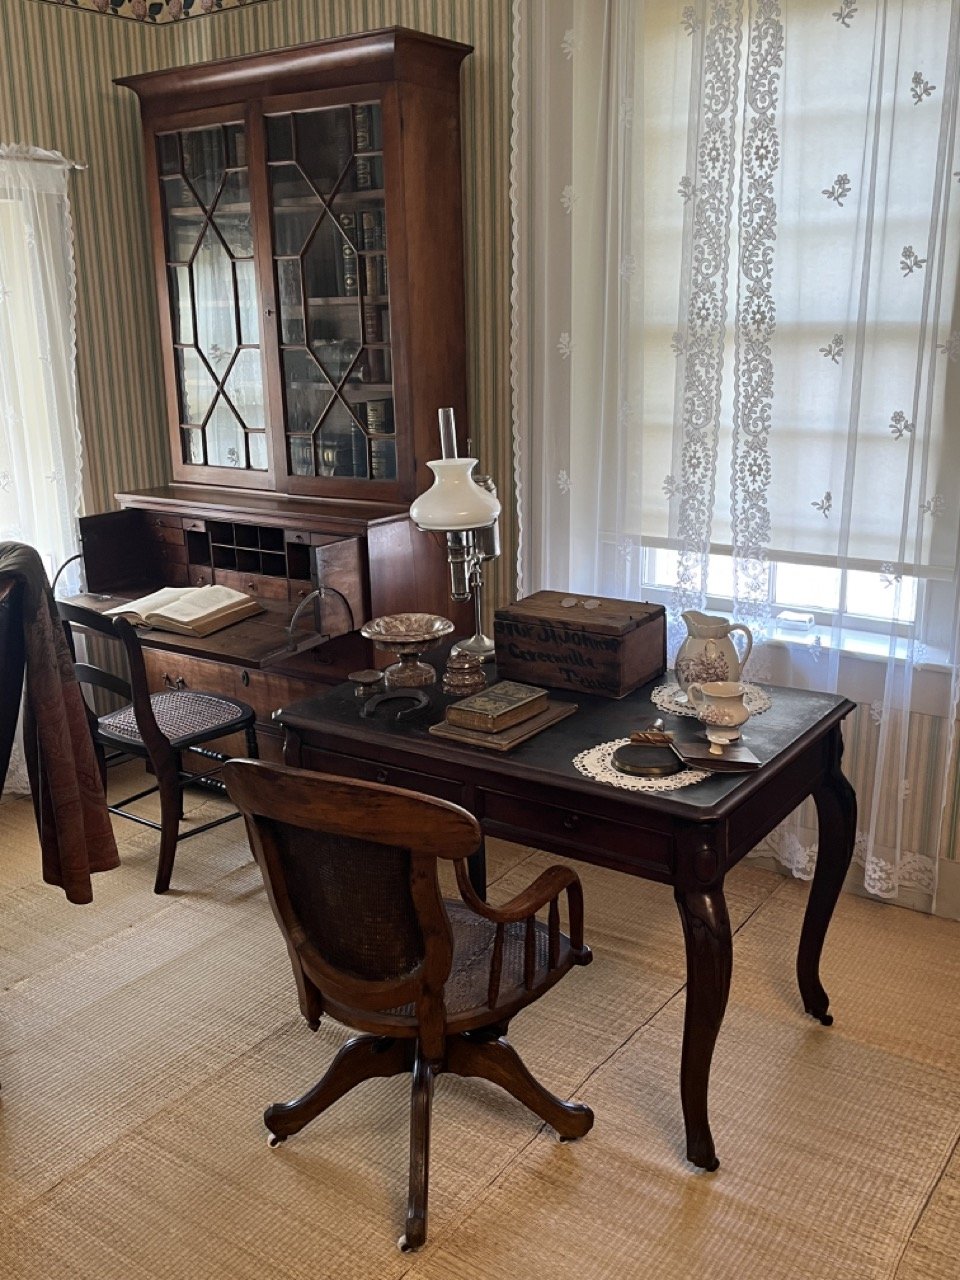 President Johnson's desk.